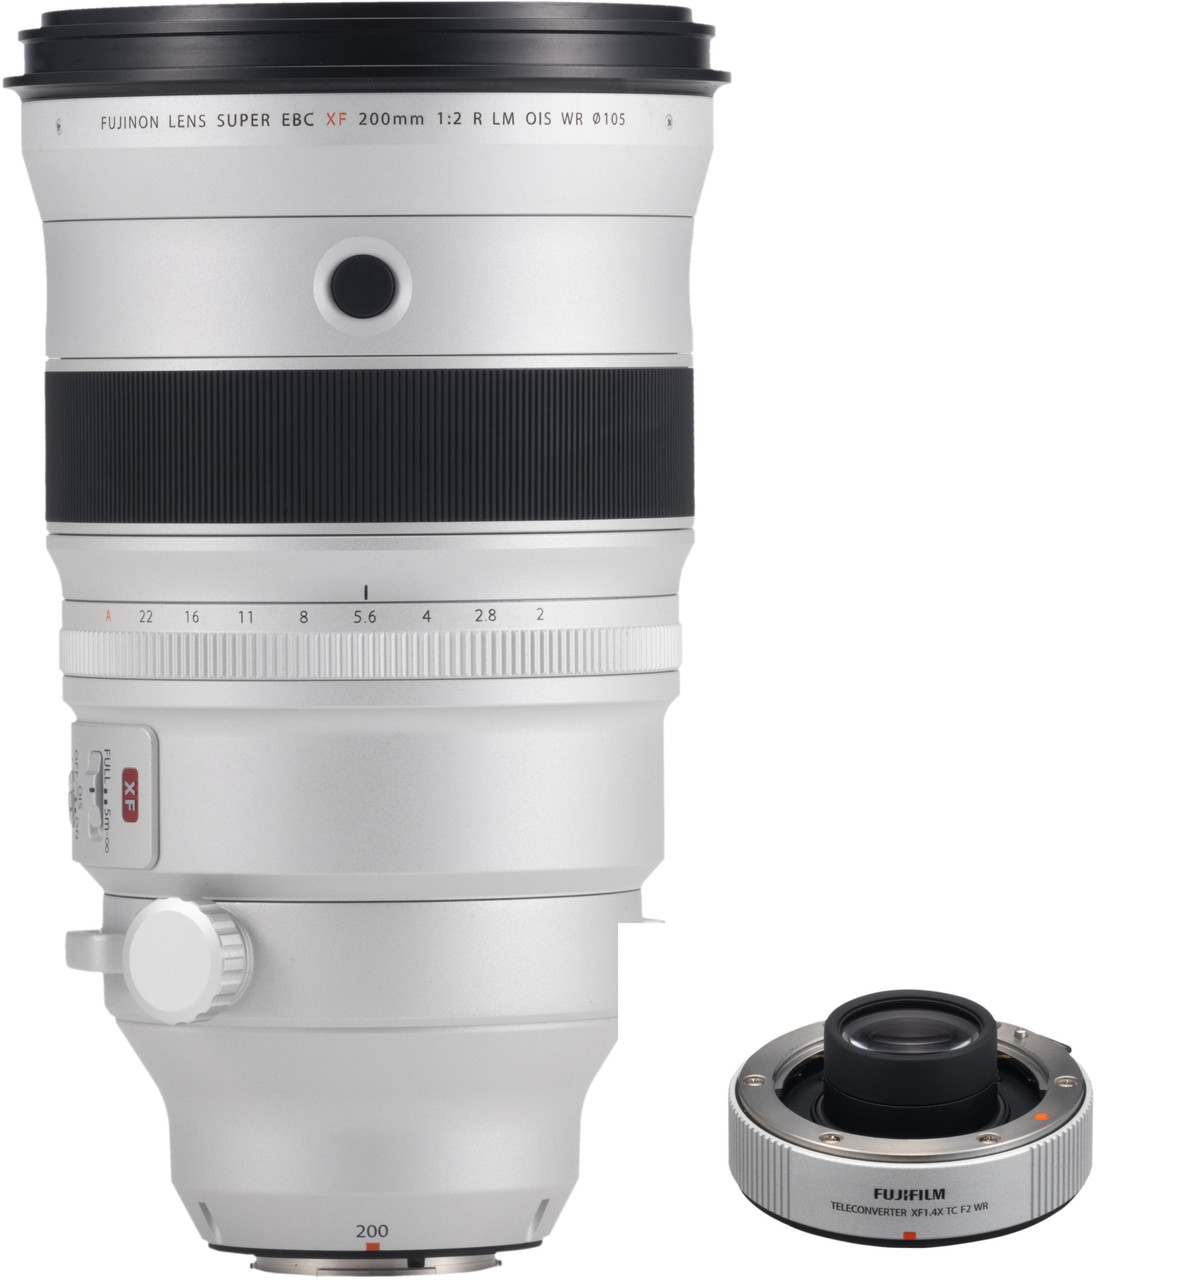 Fujinon Xf 0mm F2 R Lm Ois Wr Lens With Fujinon Xf1 4x F2 Tc Wr Teleconverter Allen S Camera